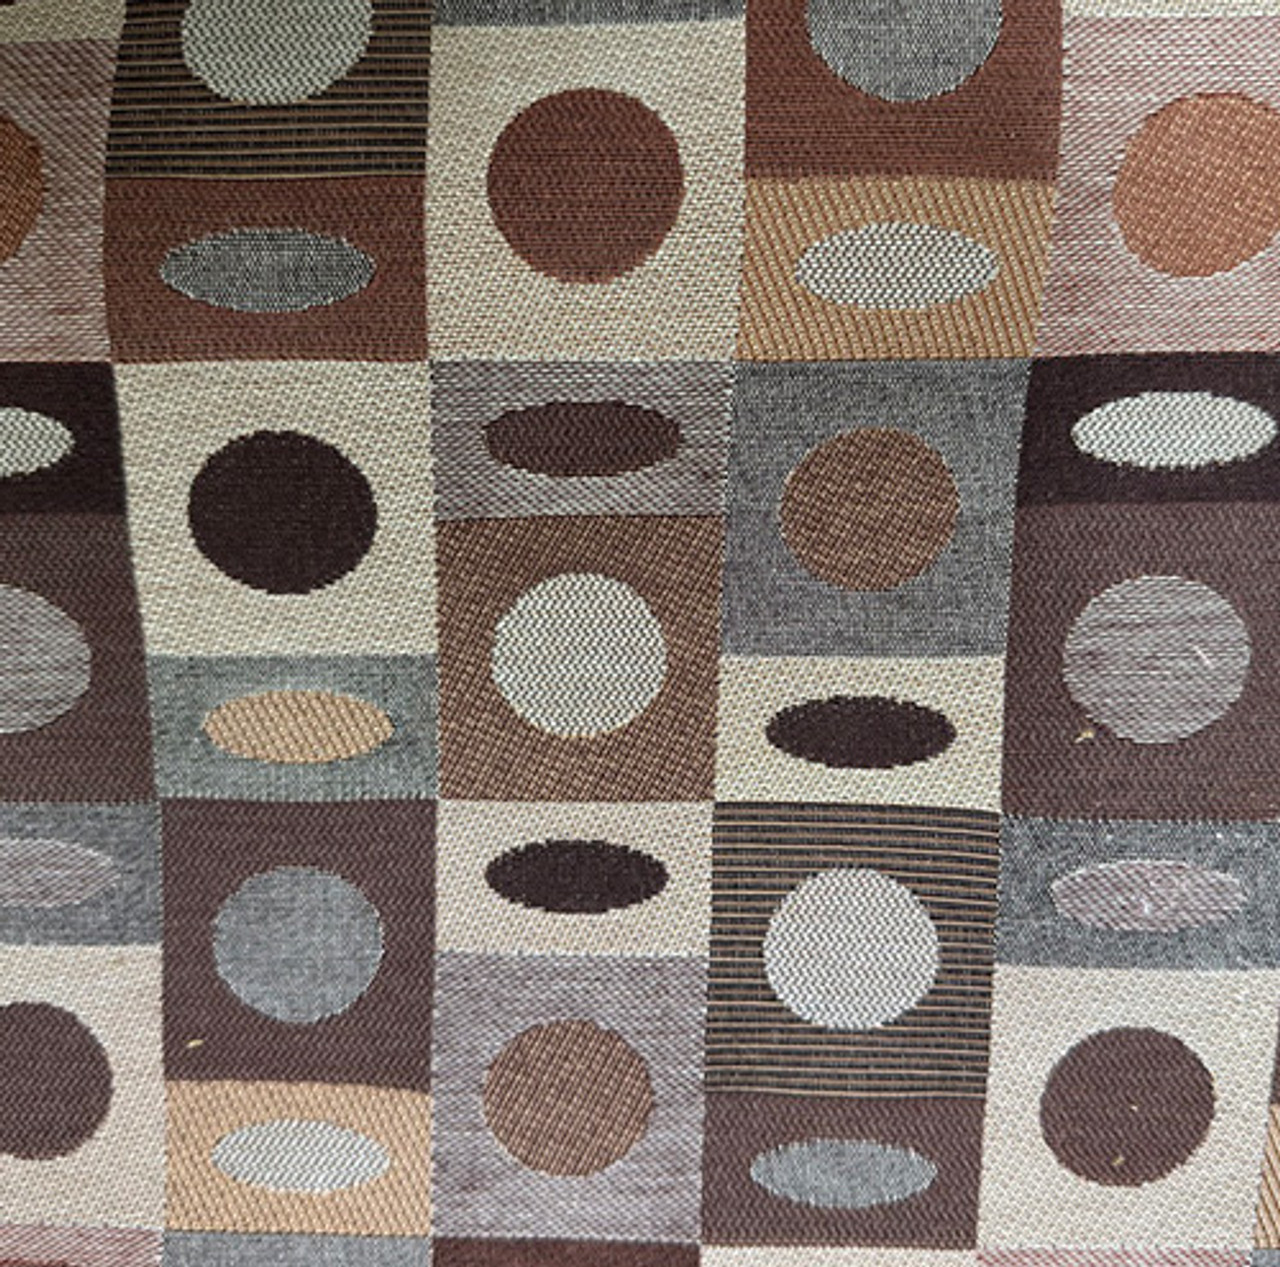 Brown & Beige Fabric Outdoor